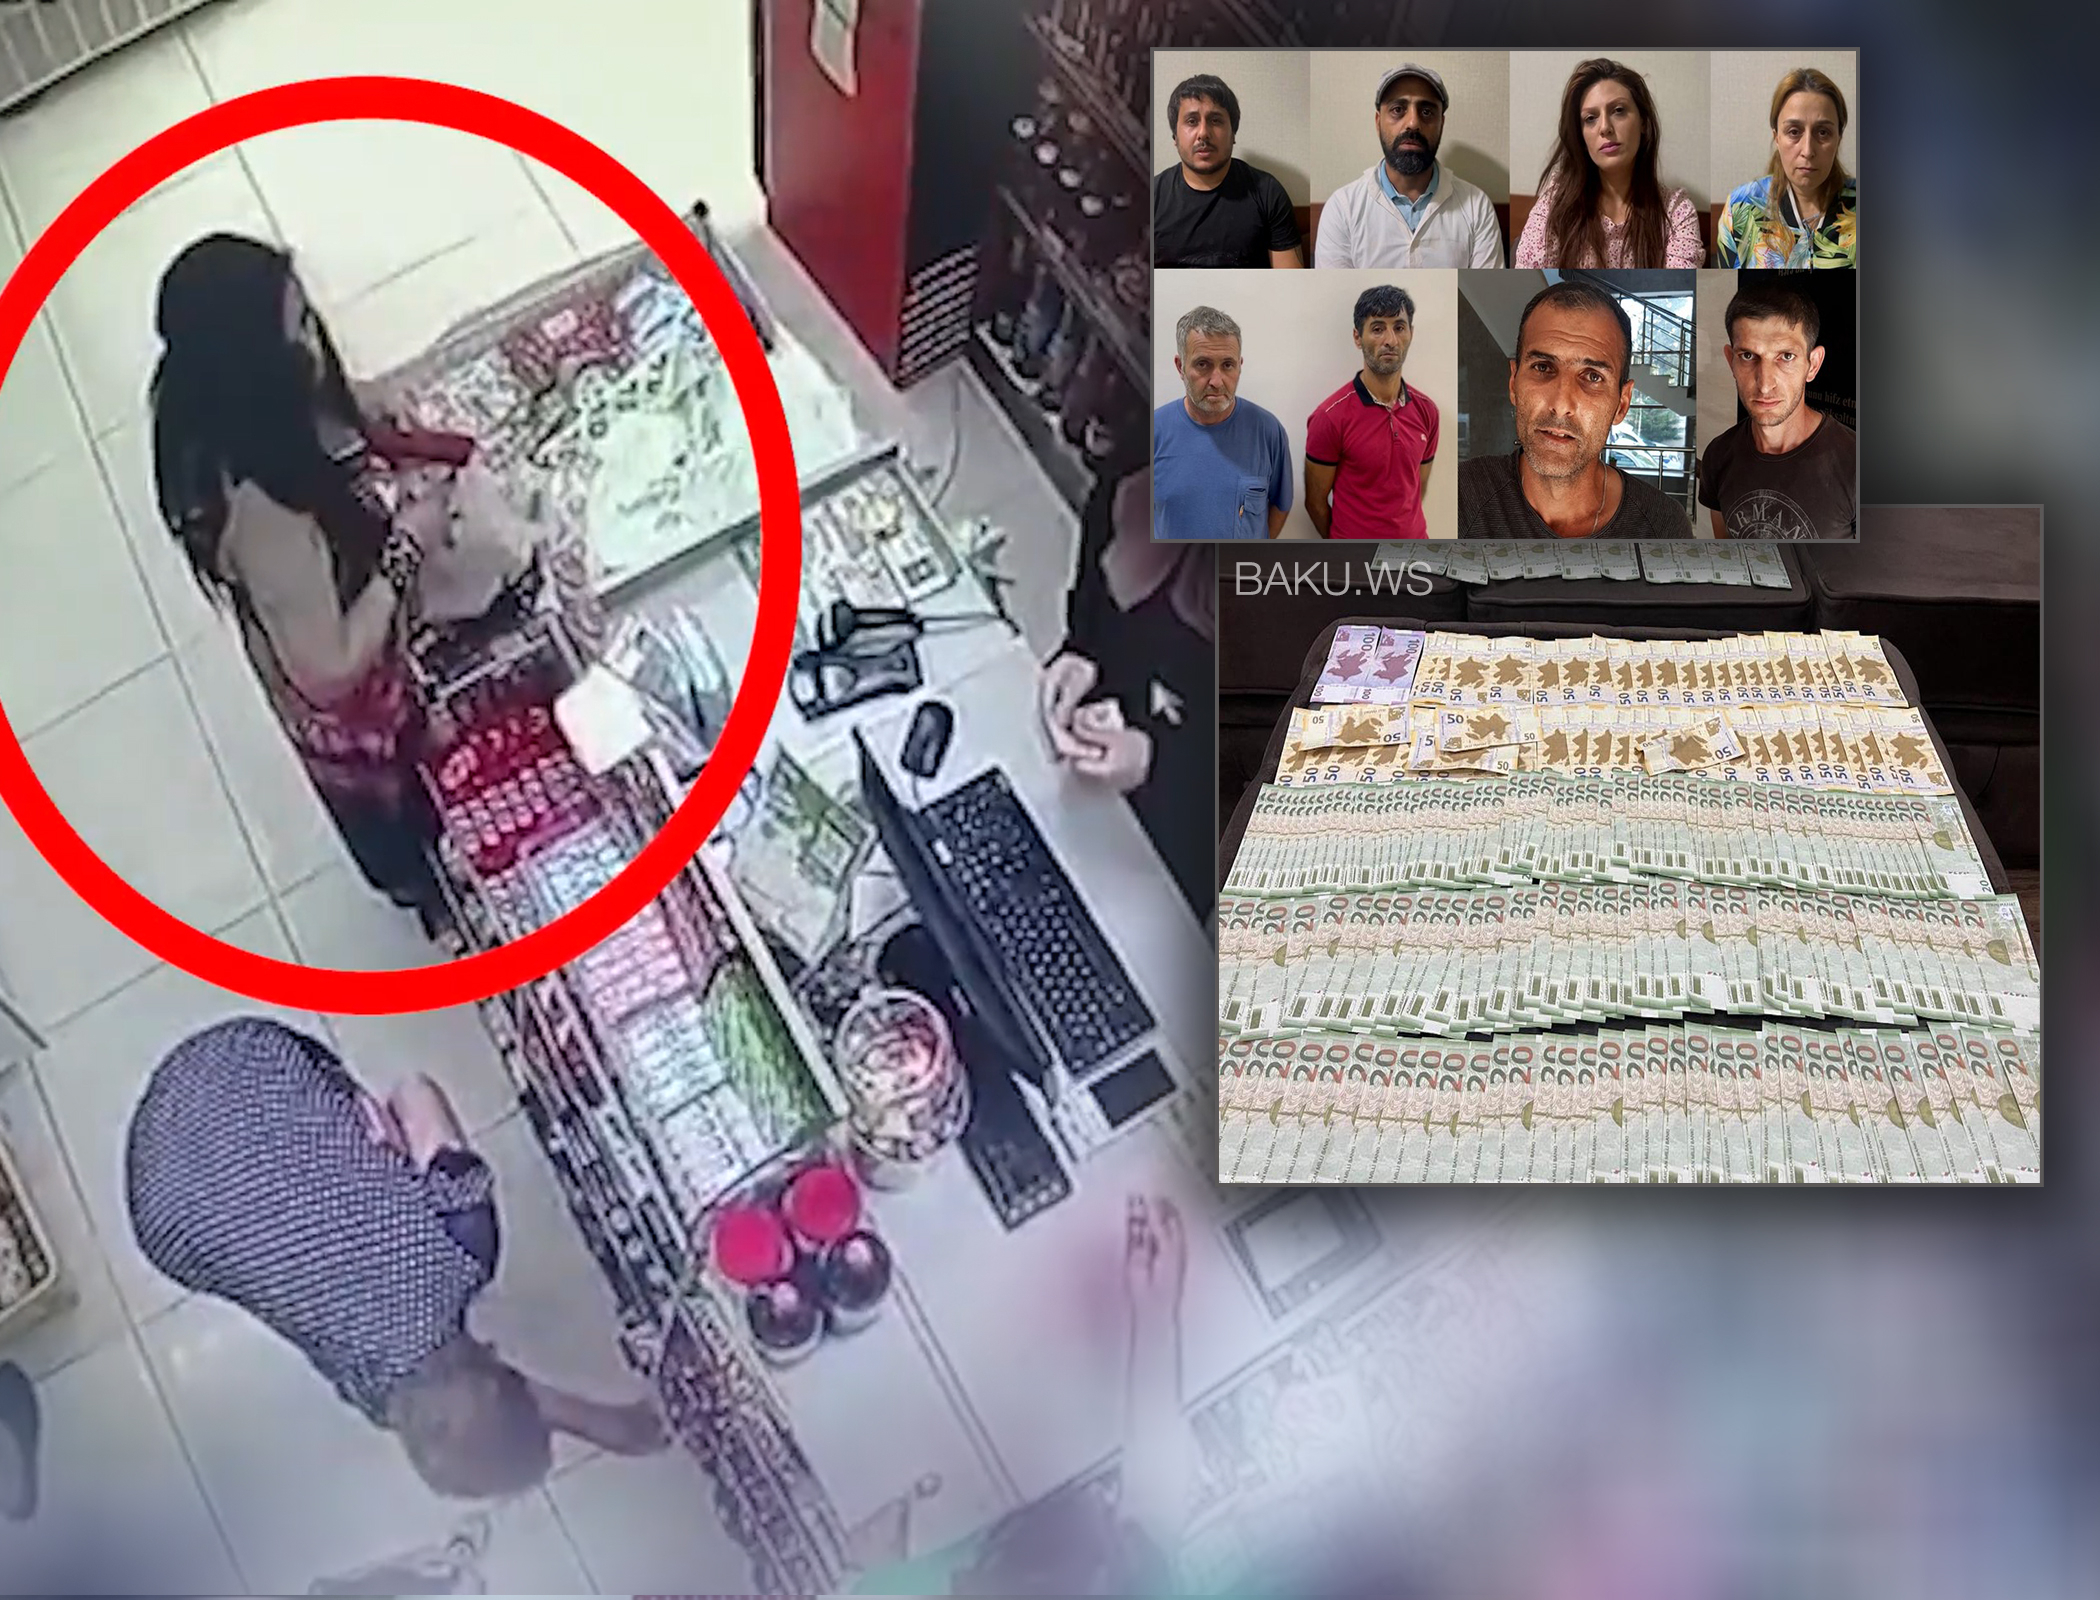 В Баку задержаны лица, расплатившиеся в магазине фальшивыми купюрами - ВИДЕО